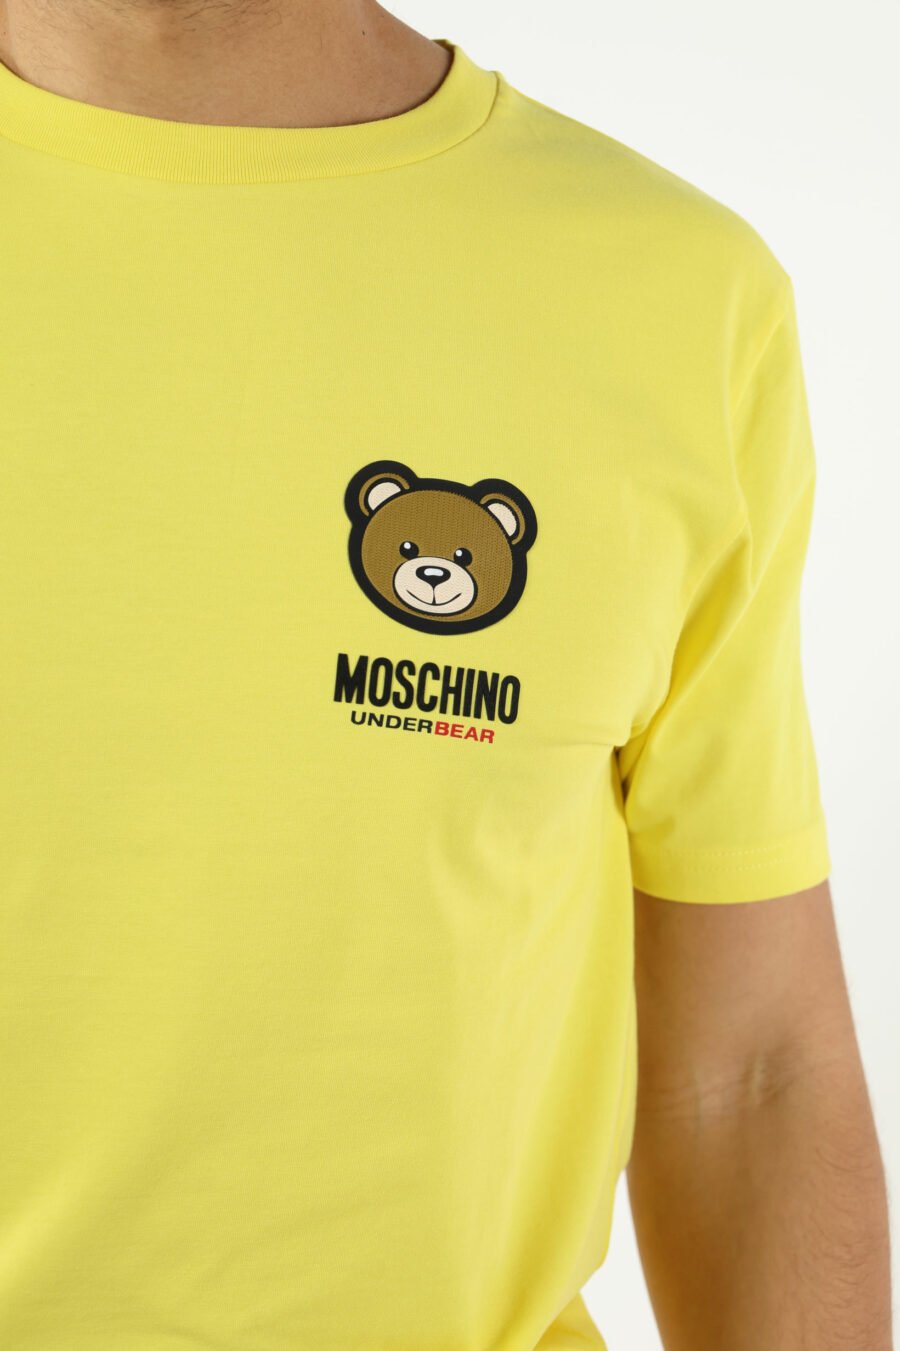 Camiseta amarilla con minilogo parche oso "underbear" - 111027